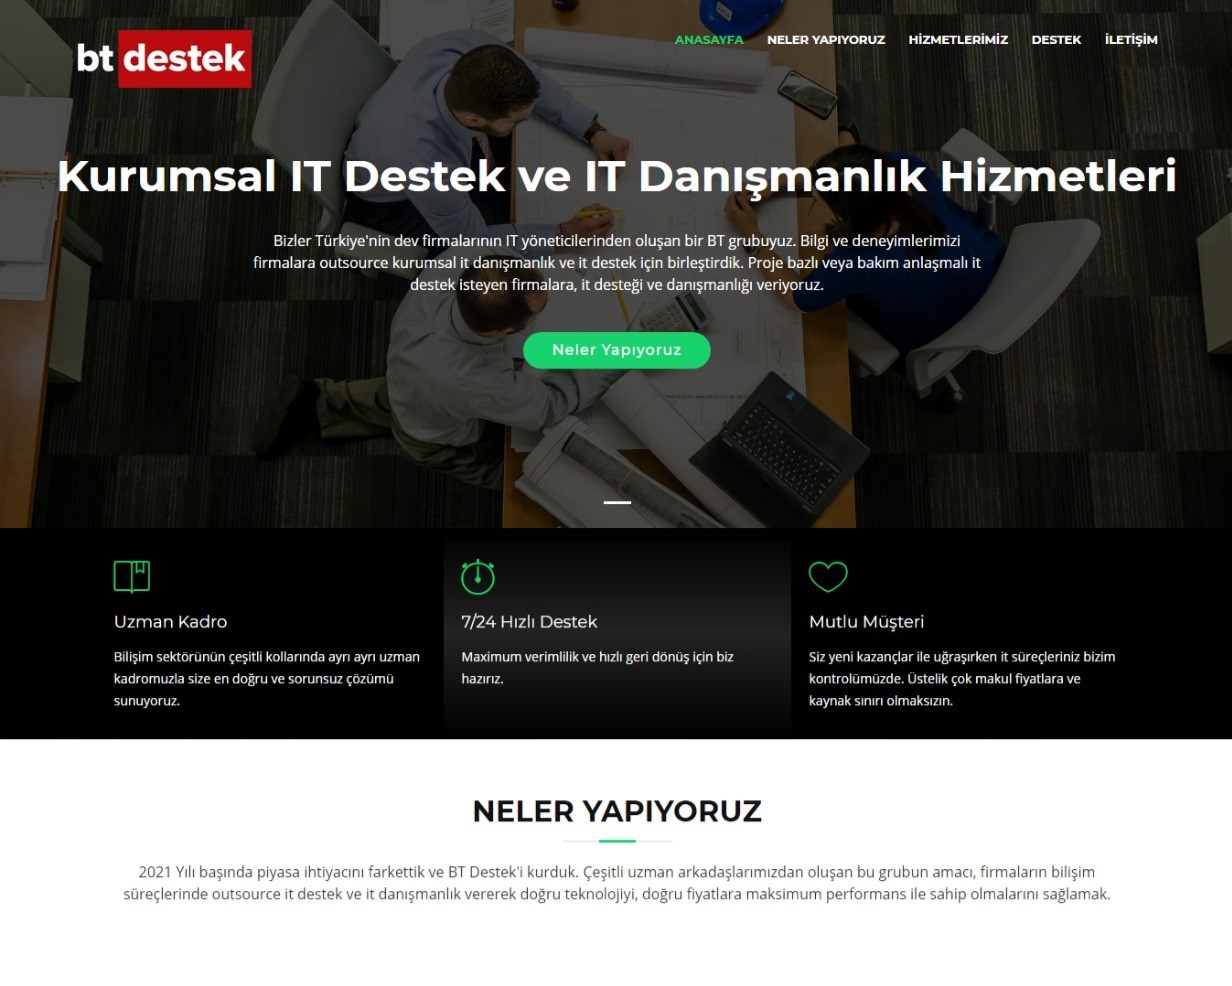 btdestek.net